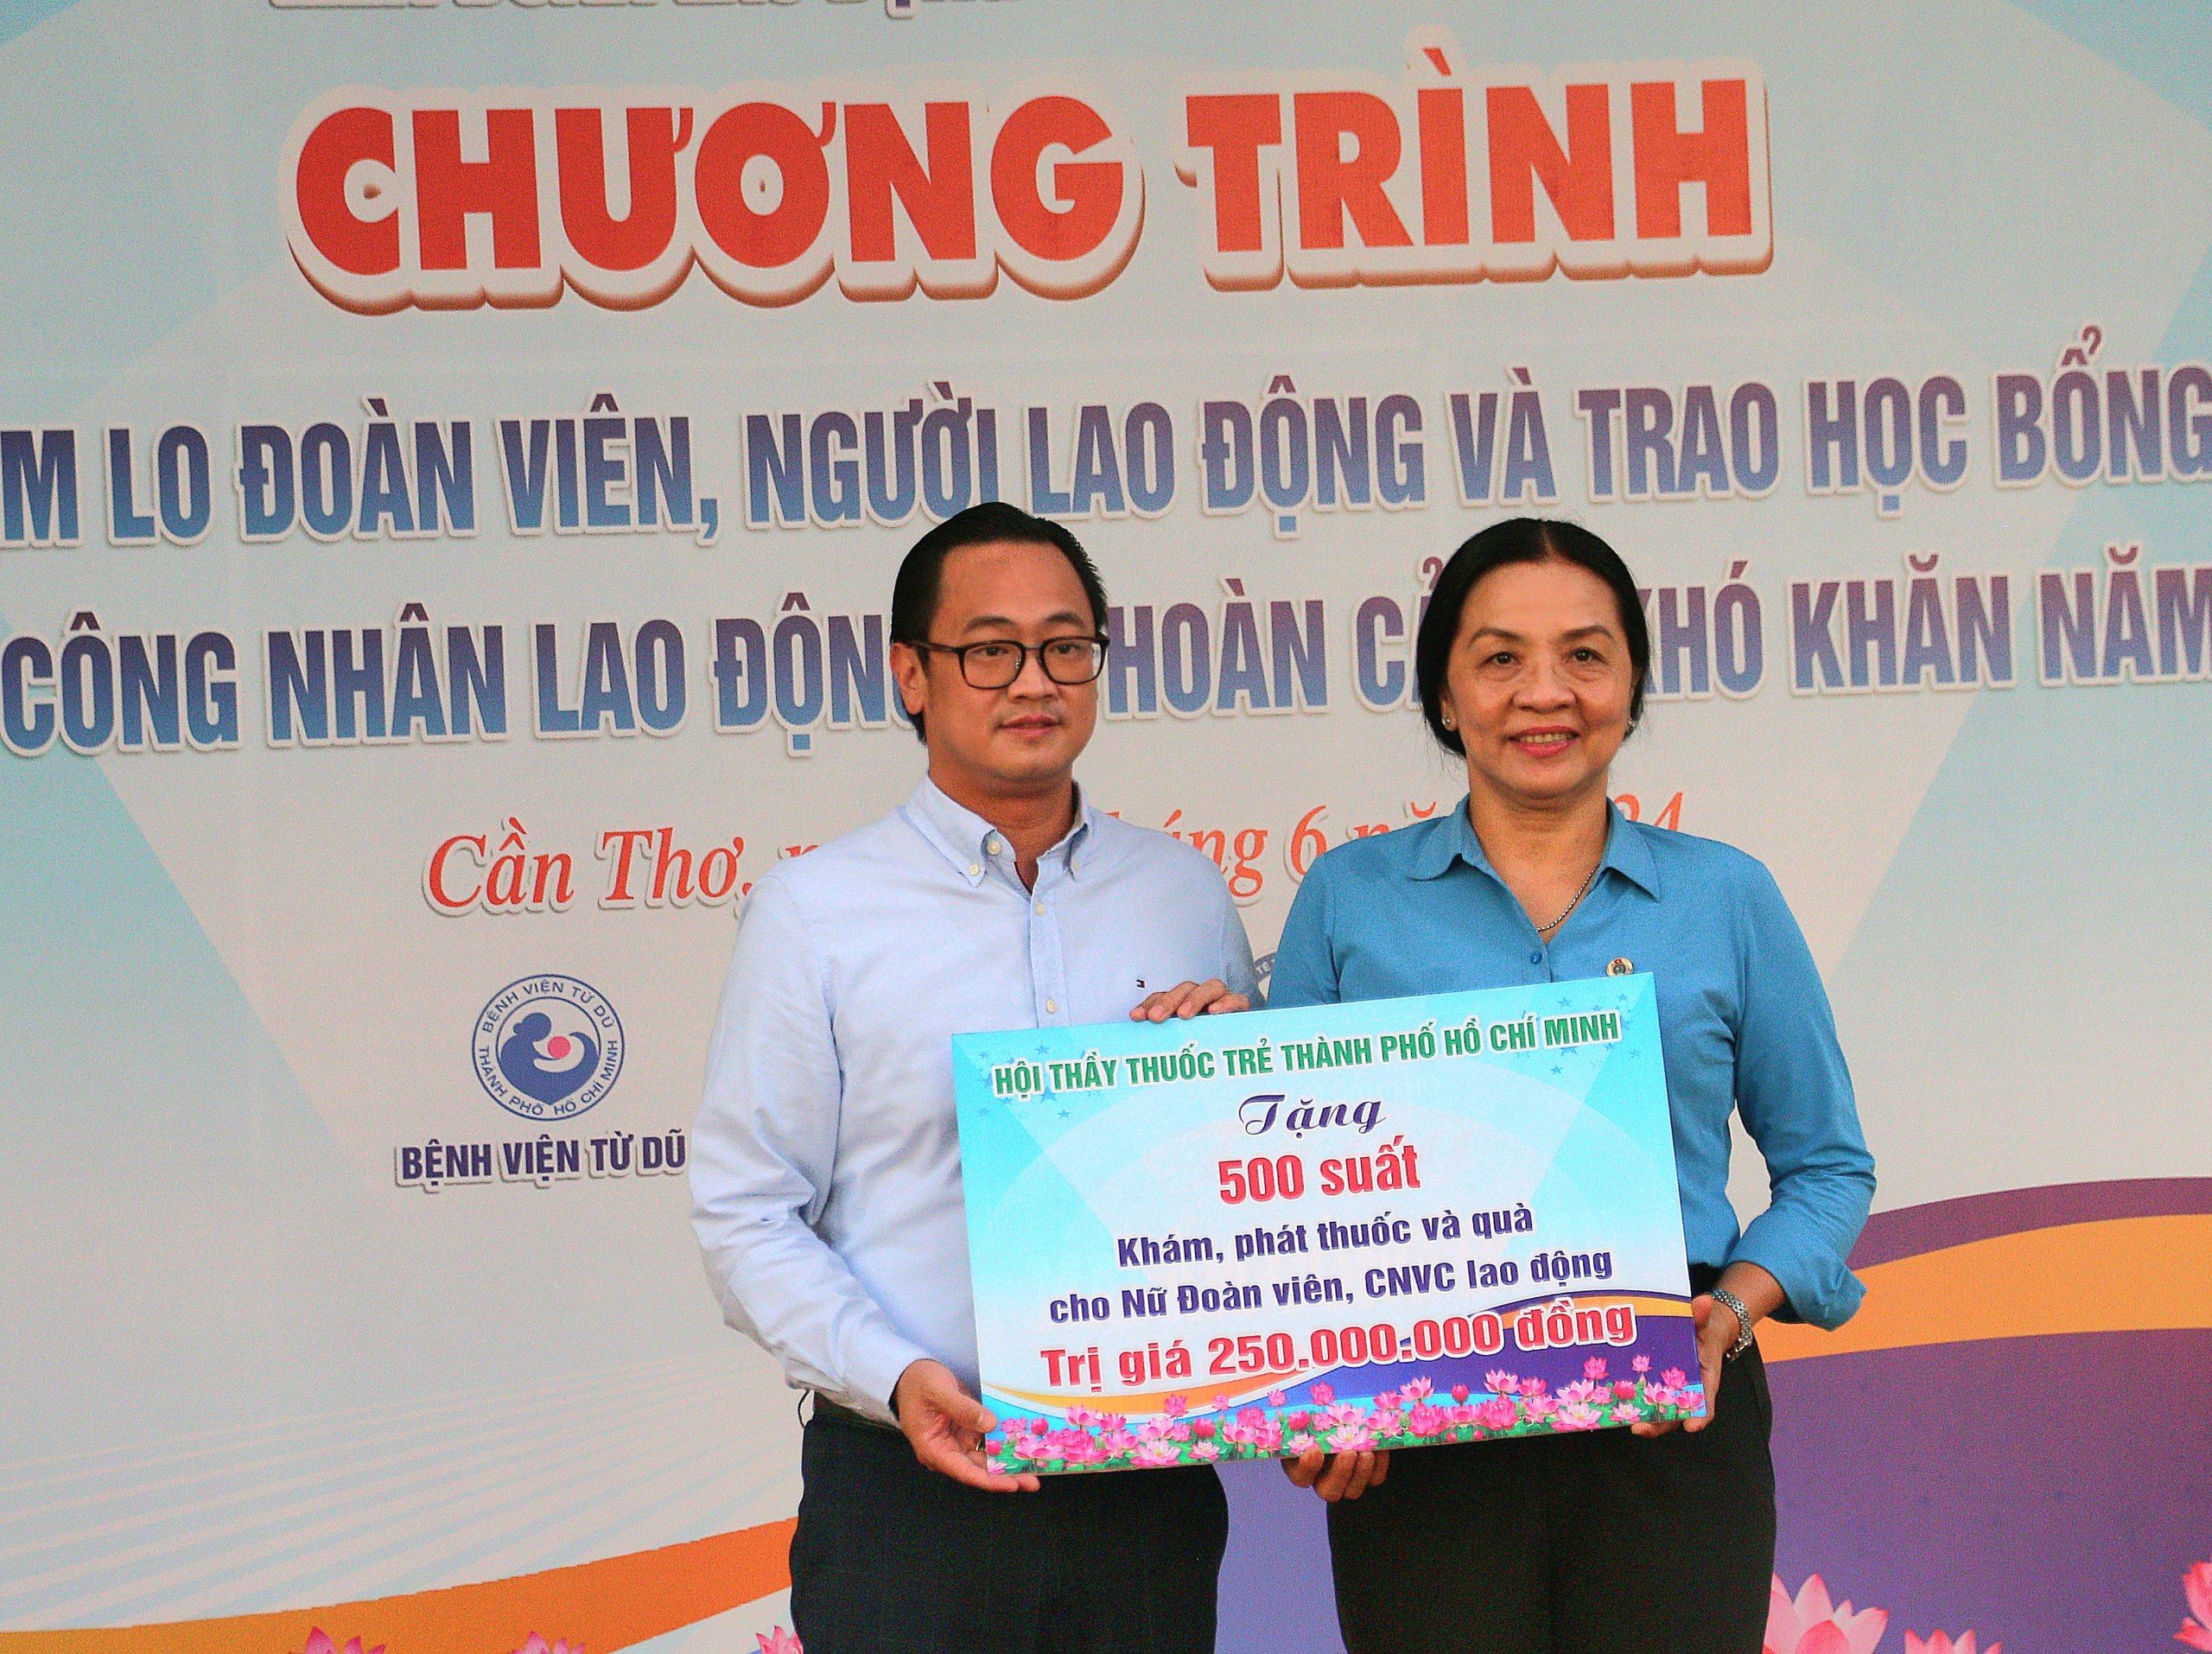 Đại diện Hội Thầy thuốc trẻ TP. Hồ Chí Minh trao bảng tượng trưng tặng 500 suất khám, phát thuốc và quà cho nữ Đoàn viên, CNVC lao động trị giá 250 triệu đồng.